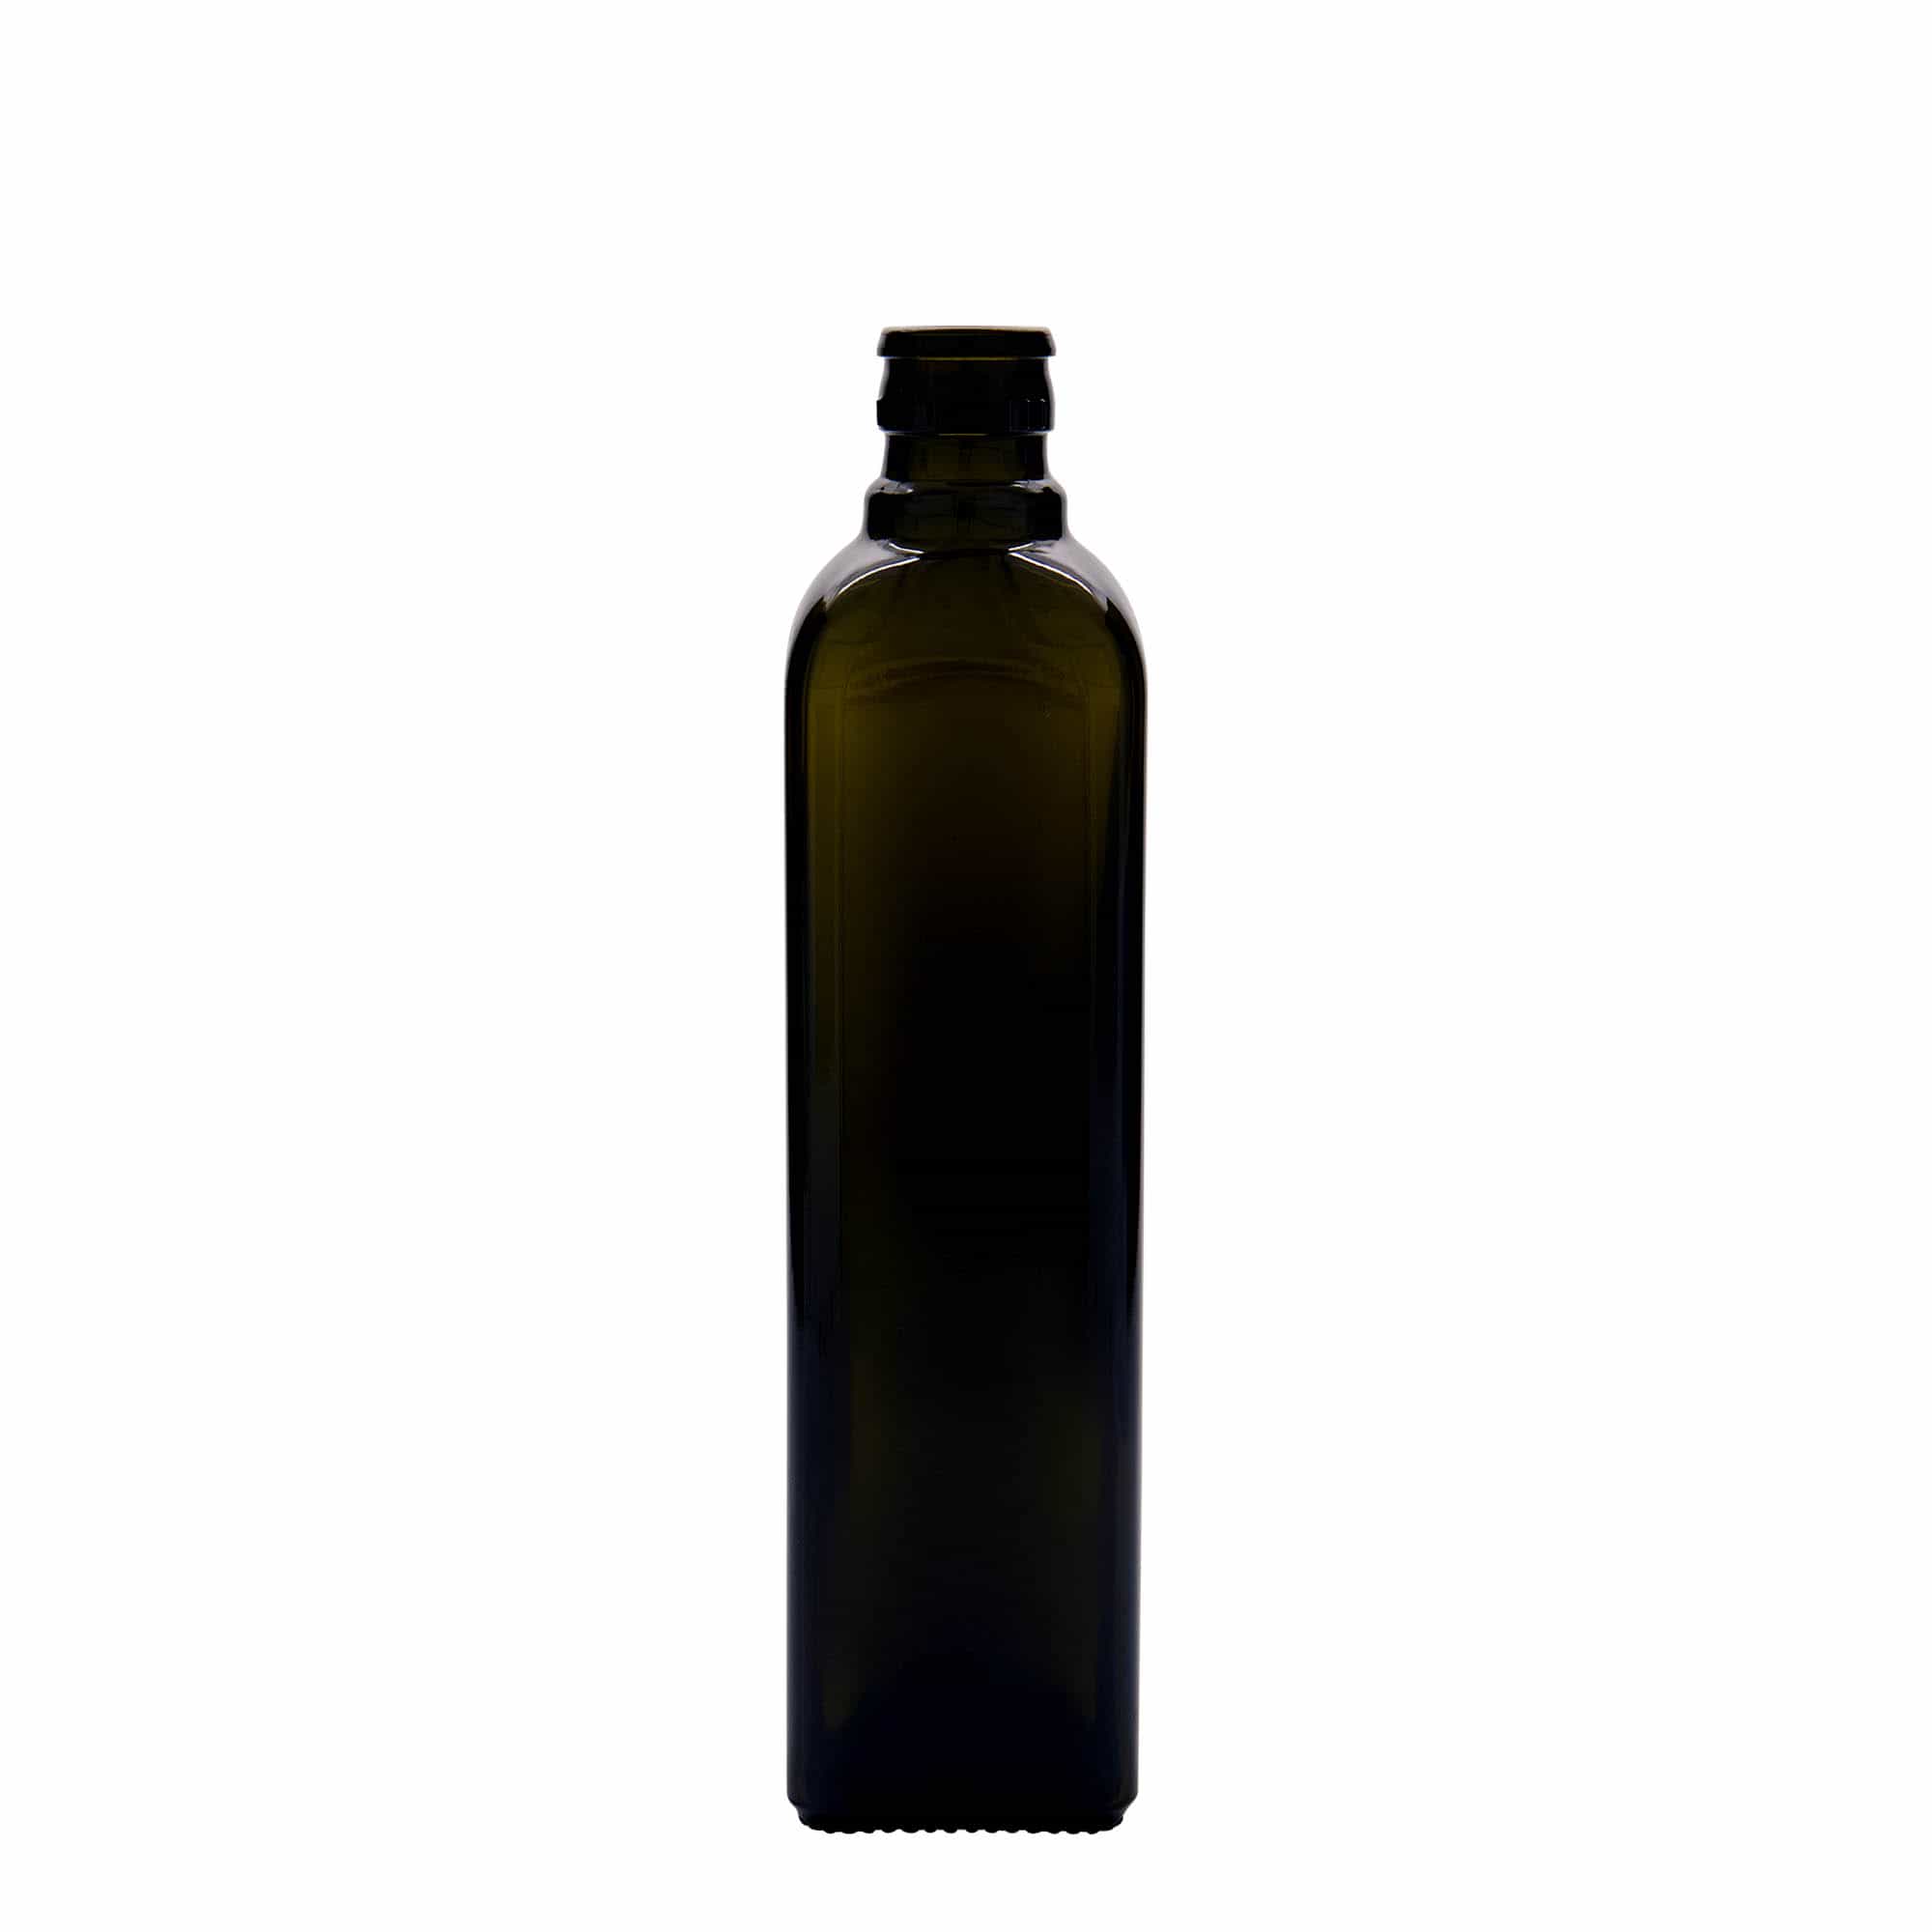 Azijn-/oliefles 'Quadra', 500 ml, glas, vierkant, antiekgroen, monding: DOP